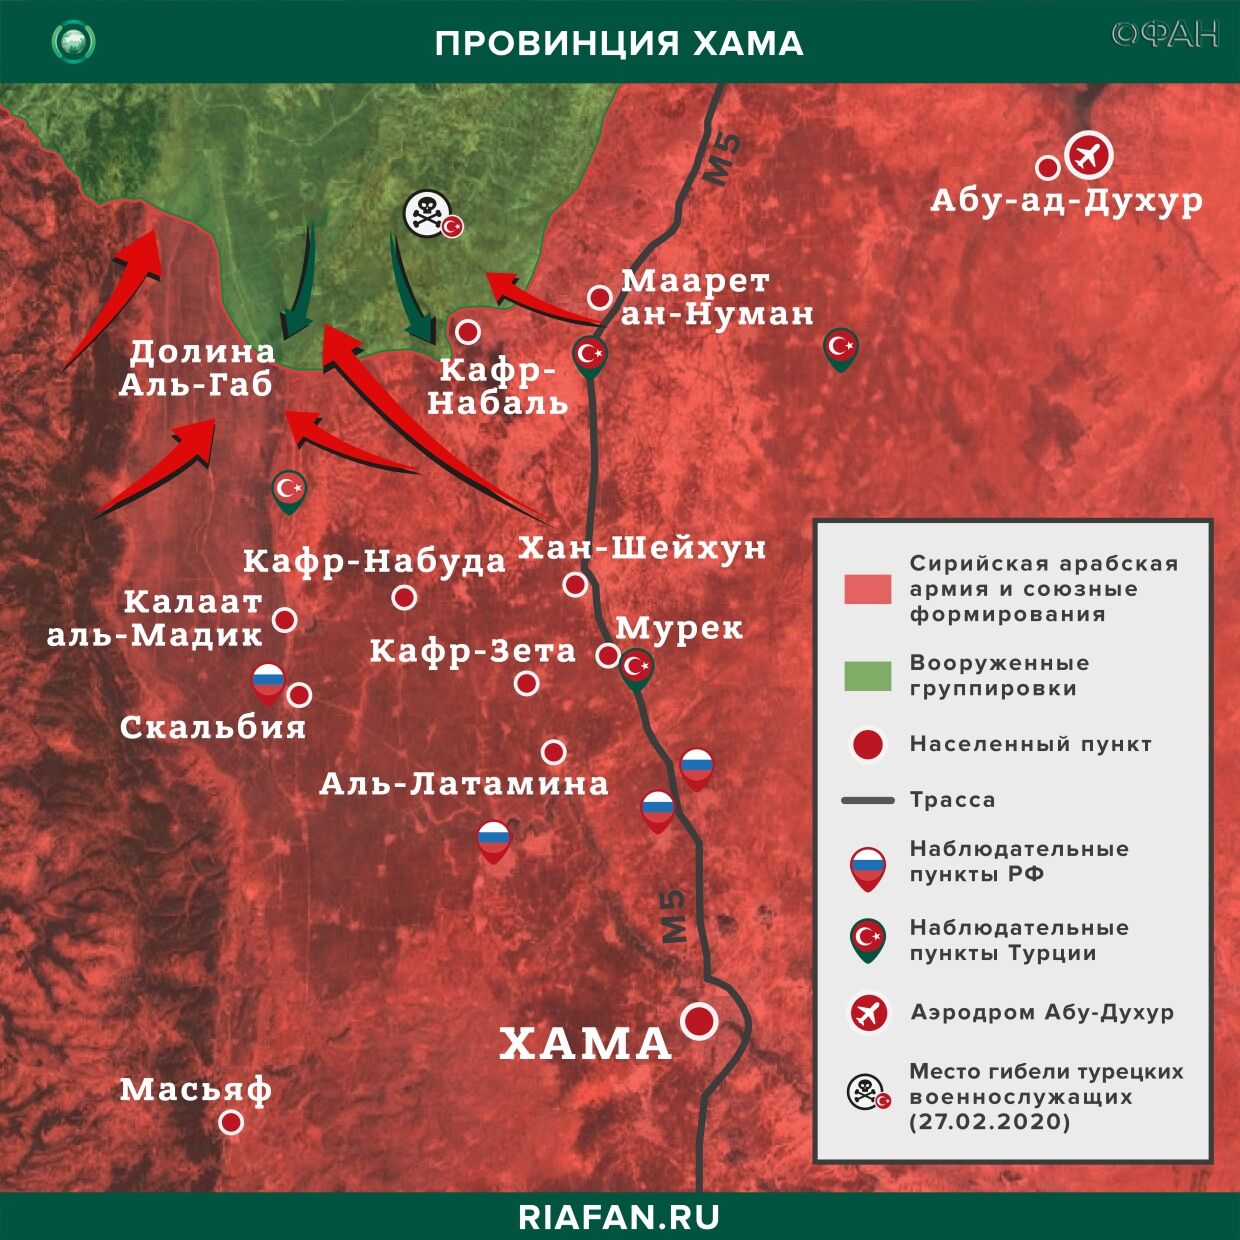 Noticias de Siria 21 Mayo 22.30: авиаудар ВВС международной коалиции в Дейр-эз-Зоре, провокации ХТШ в Хаме